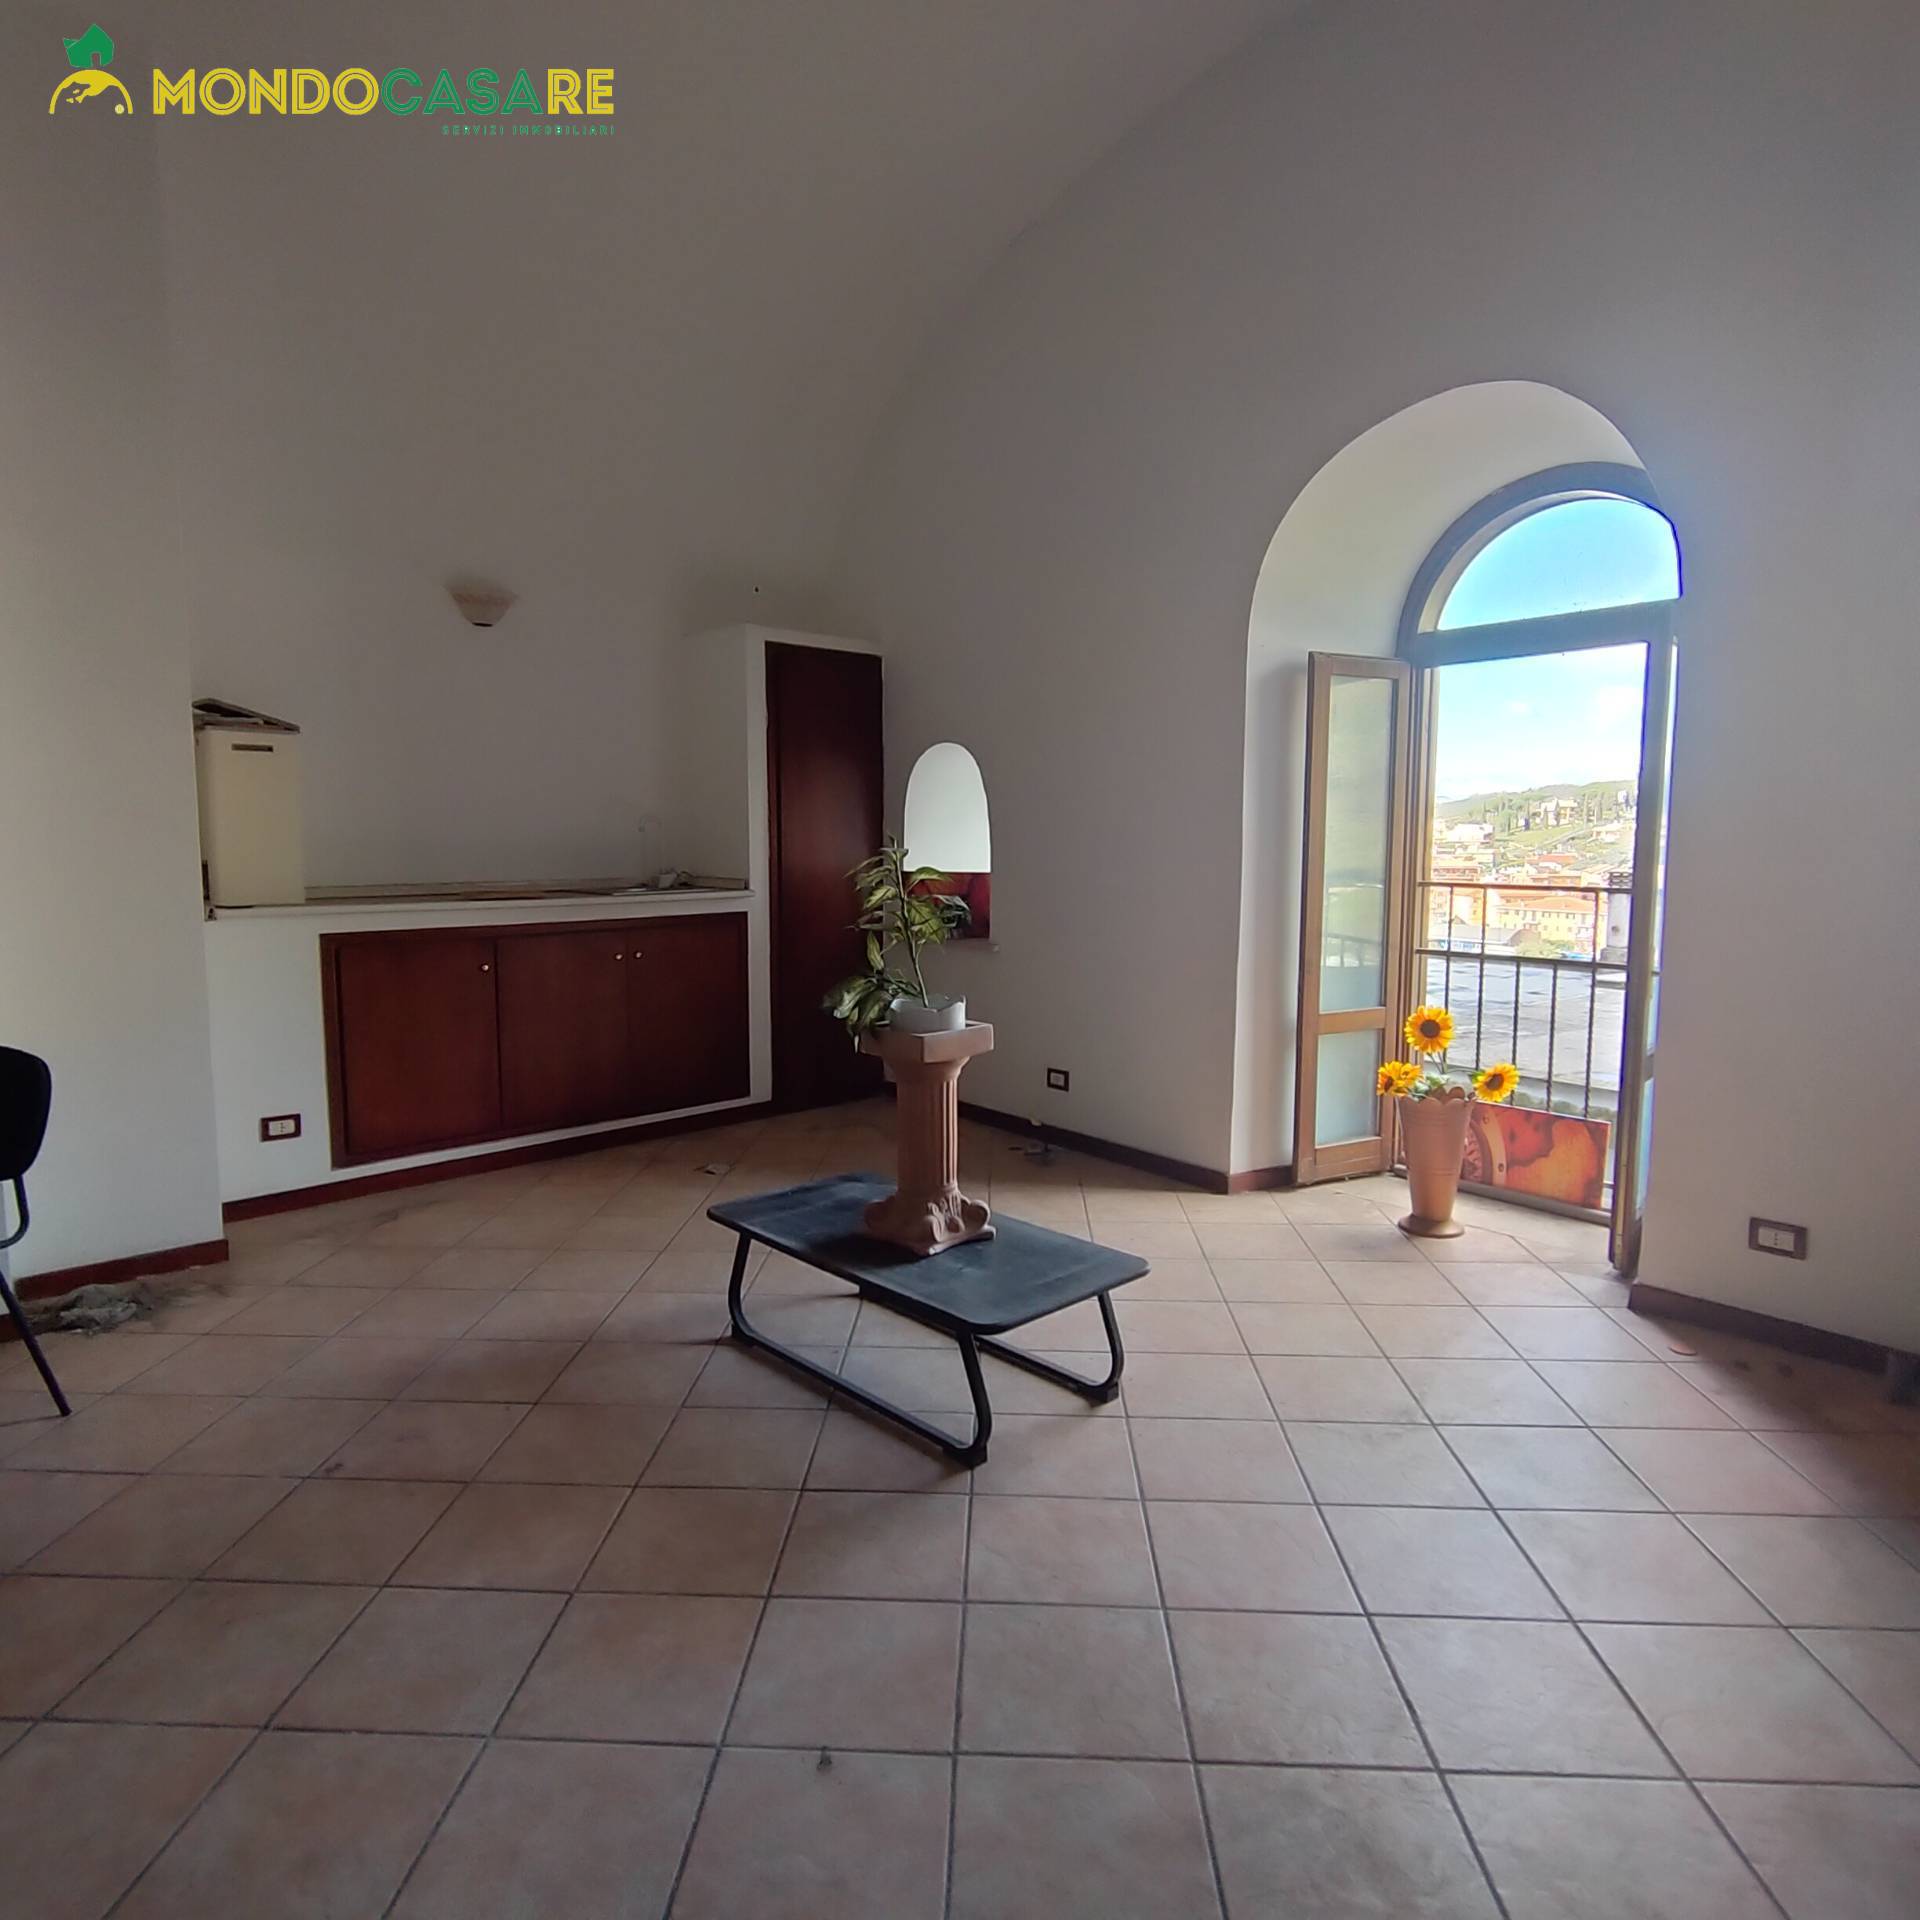 Appartamento in vendita a Palombara Sabina, 3 locali, prezzo € 26.000 | CambioCasa.it